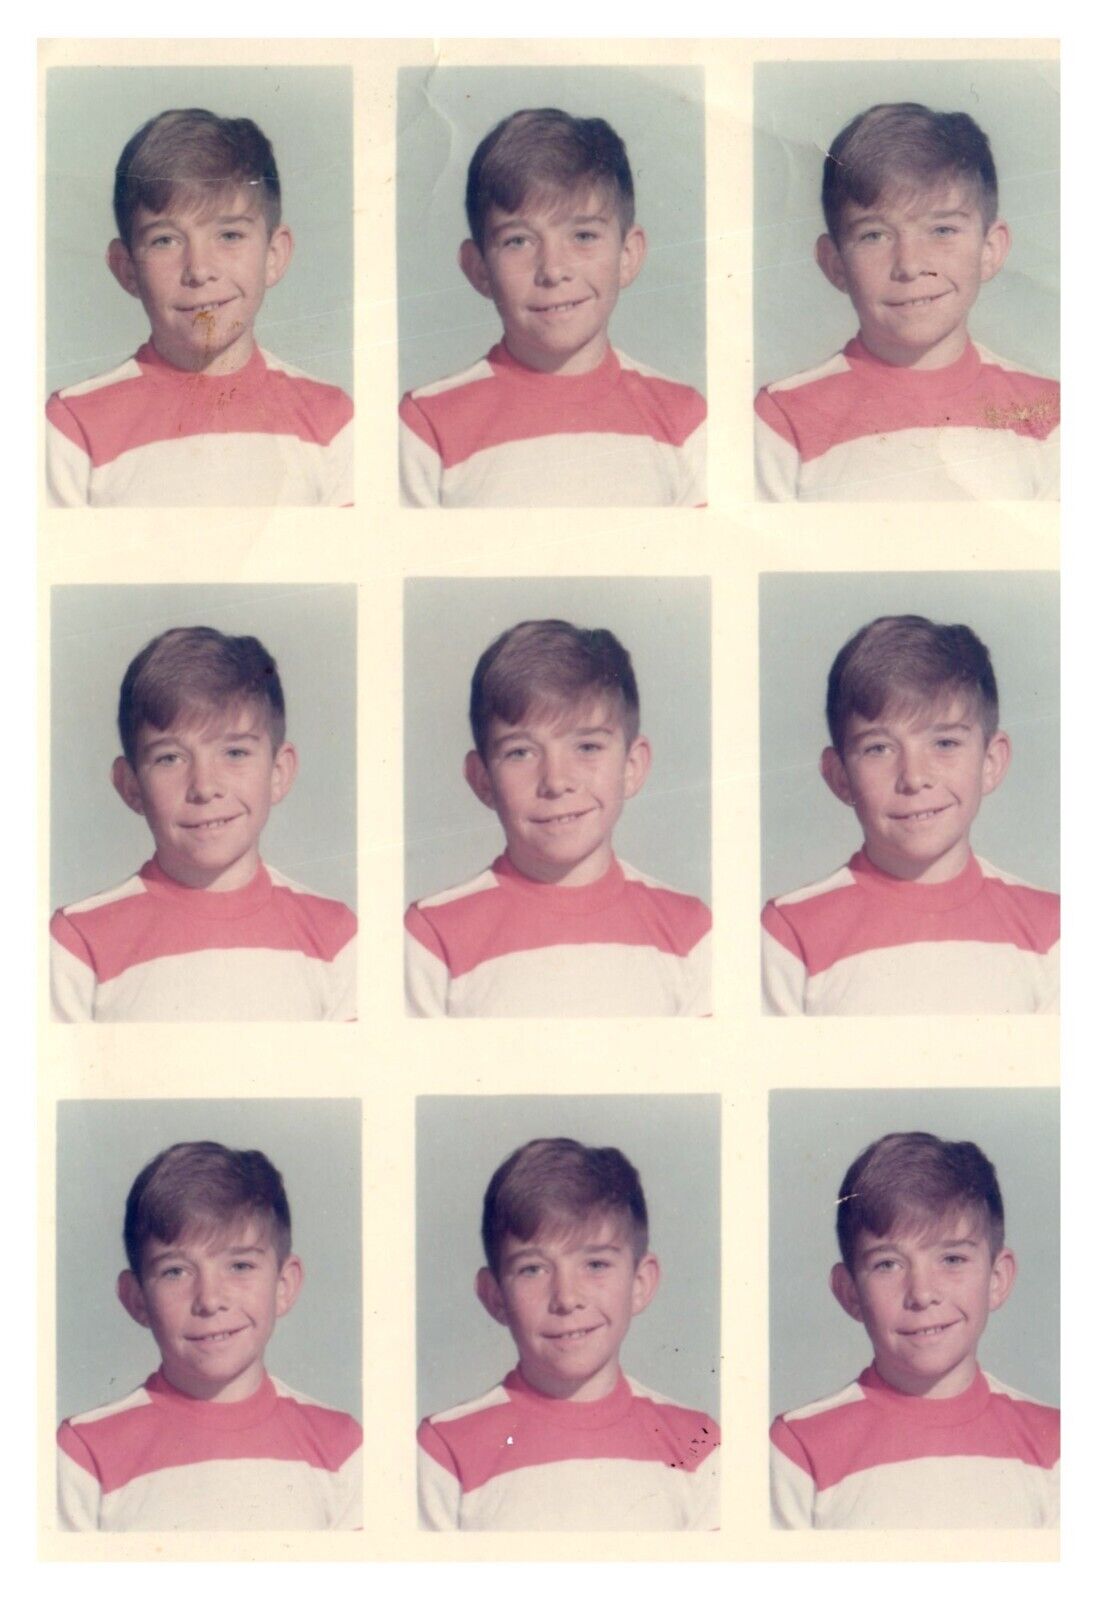 1970s American Boy Portrait Vintage Snapshot Photo Found